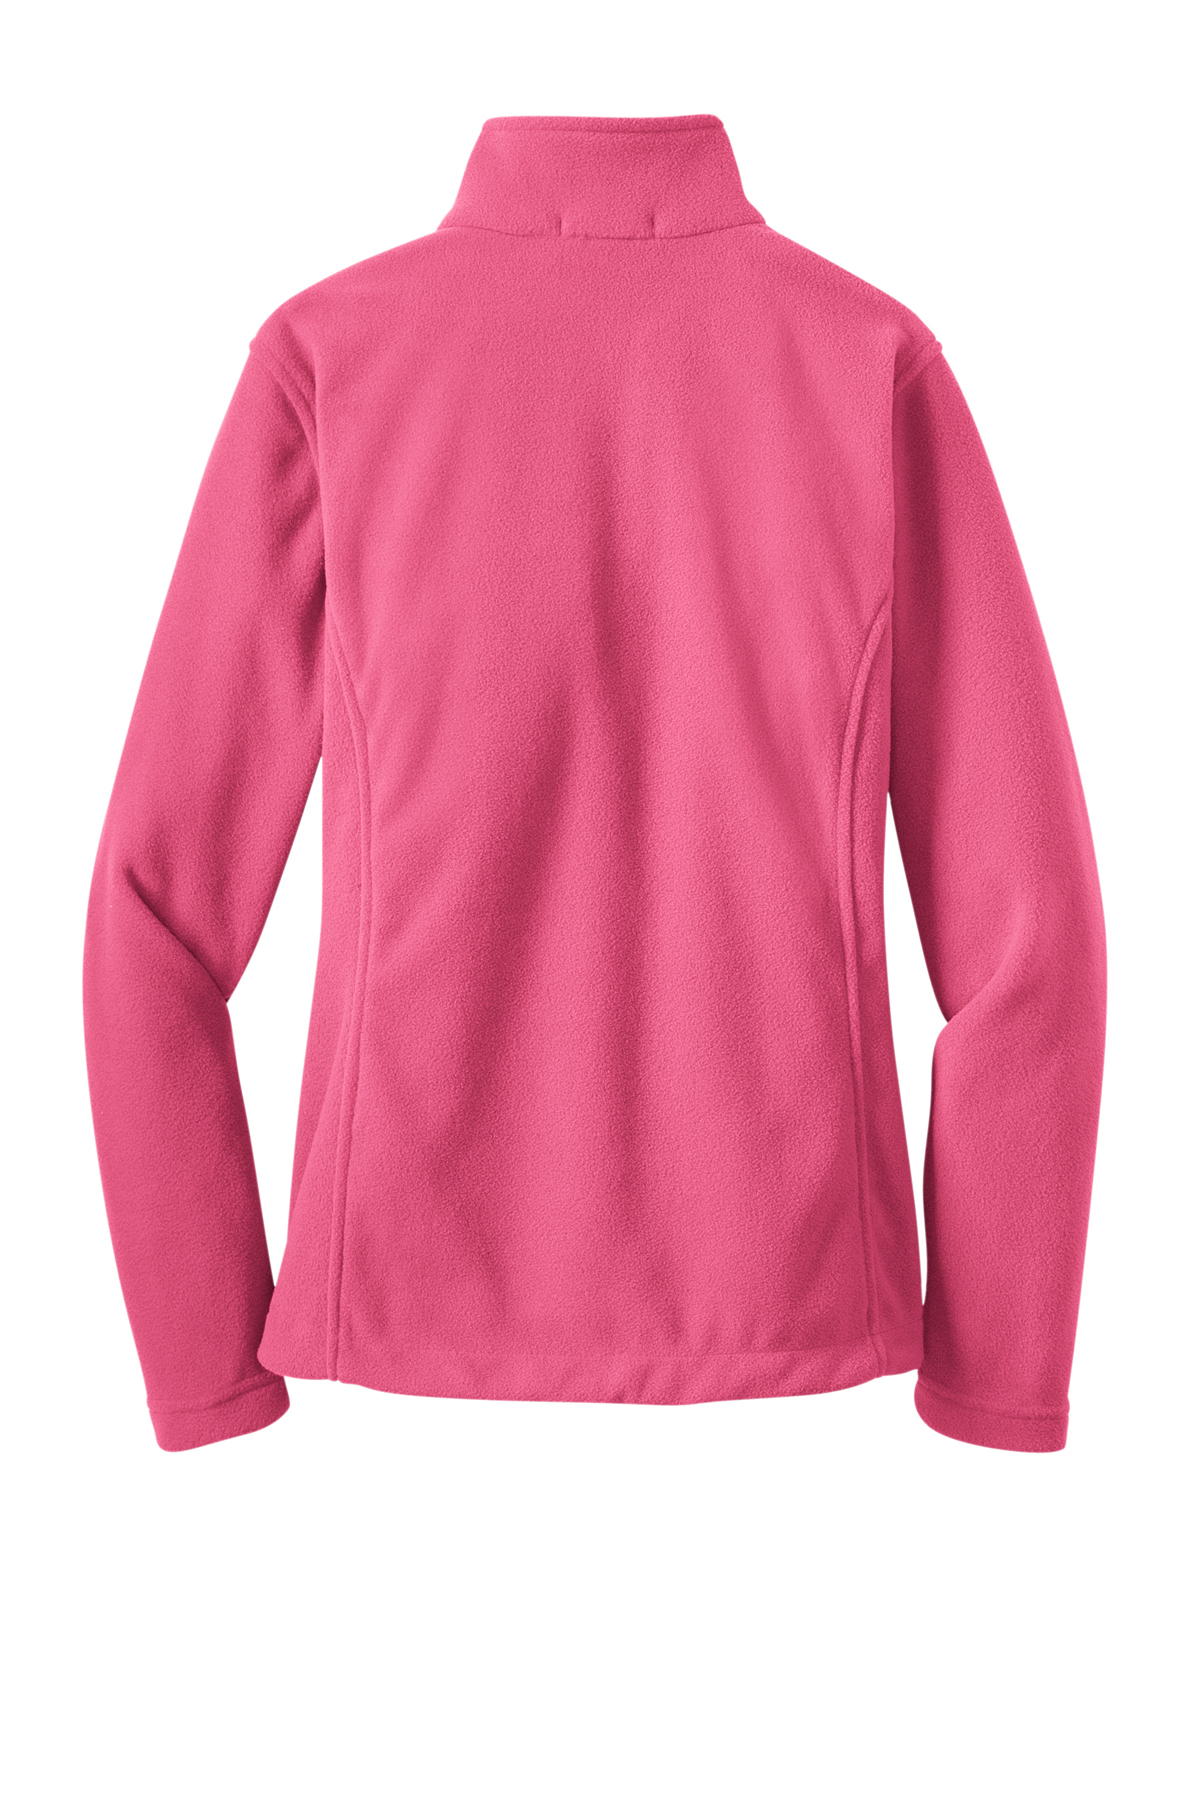 Bella Jacket in pink - size 14 - Fredas